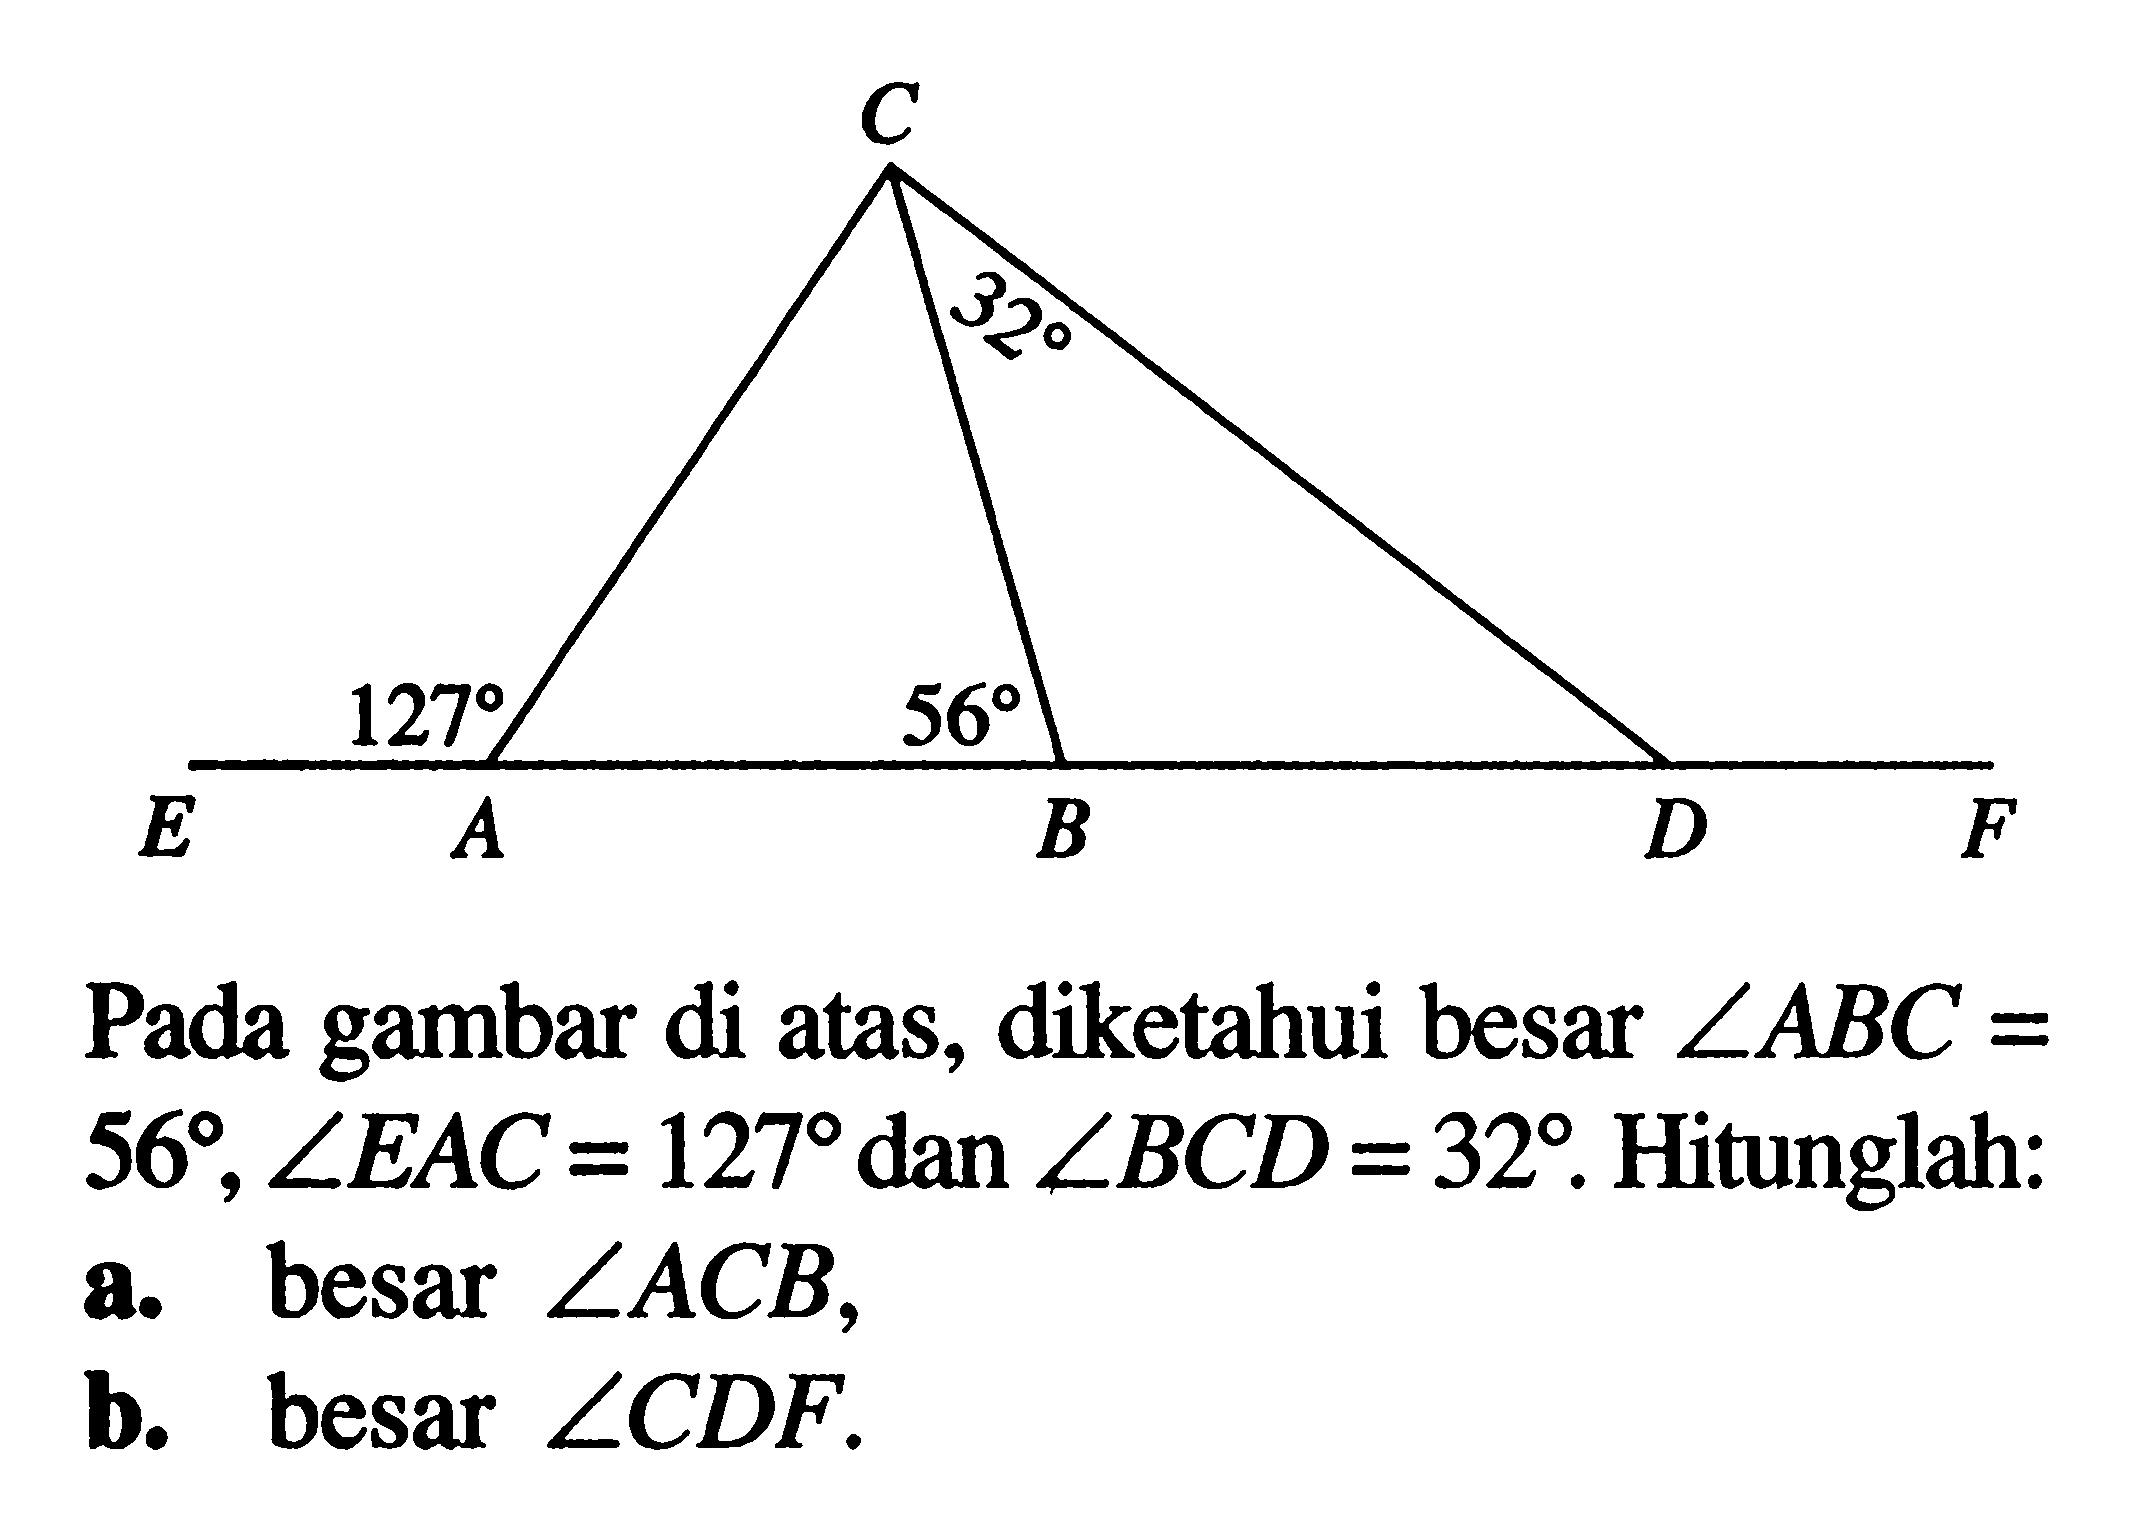 127 56 32Pada gambar di atas, diketahui besar sudut ABC= 56, sudut EAC=127 dan sudut BCD=32. Hitunglah:a. besar sudut ACB,b. besar sudut CDF.